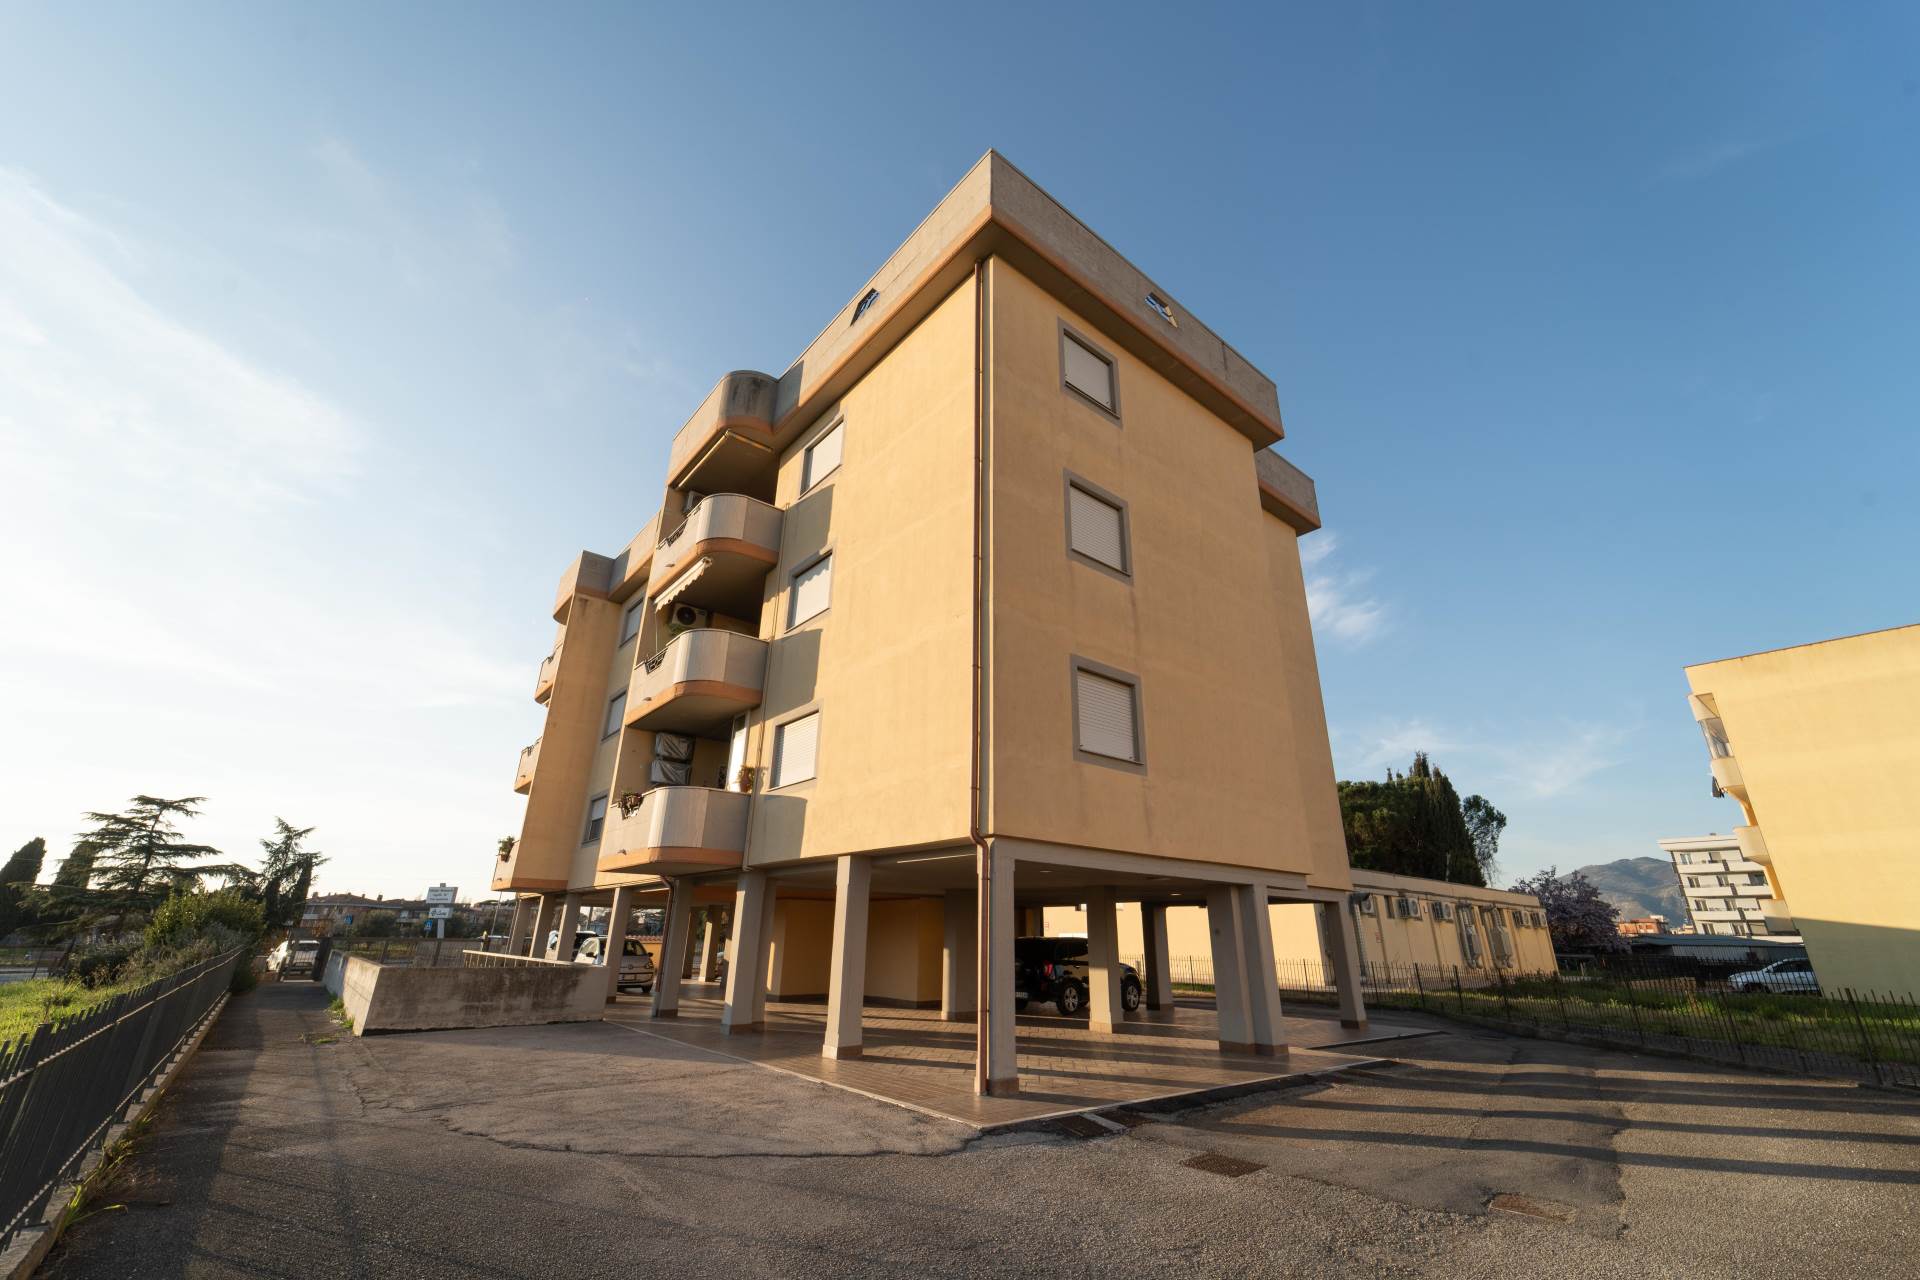 L'Agenzia Cerco Casa propone in vendita meraviglioso appartamento con tre camere, doppi servizi, terrazzo, posto auto, cantina a Latina Scalo. 